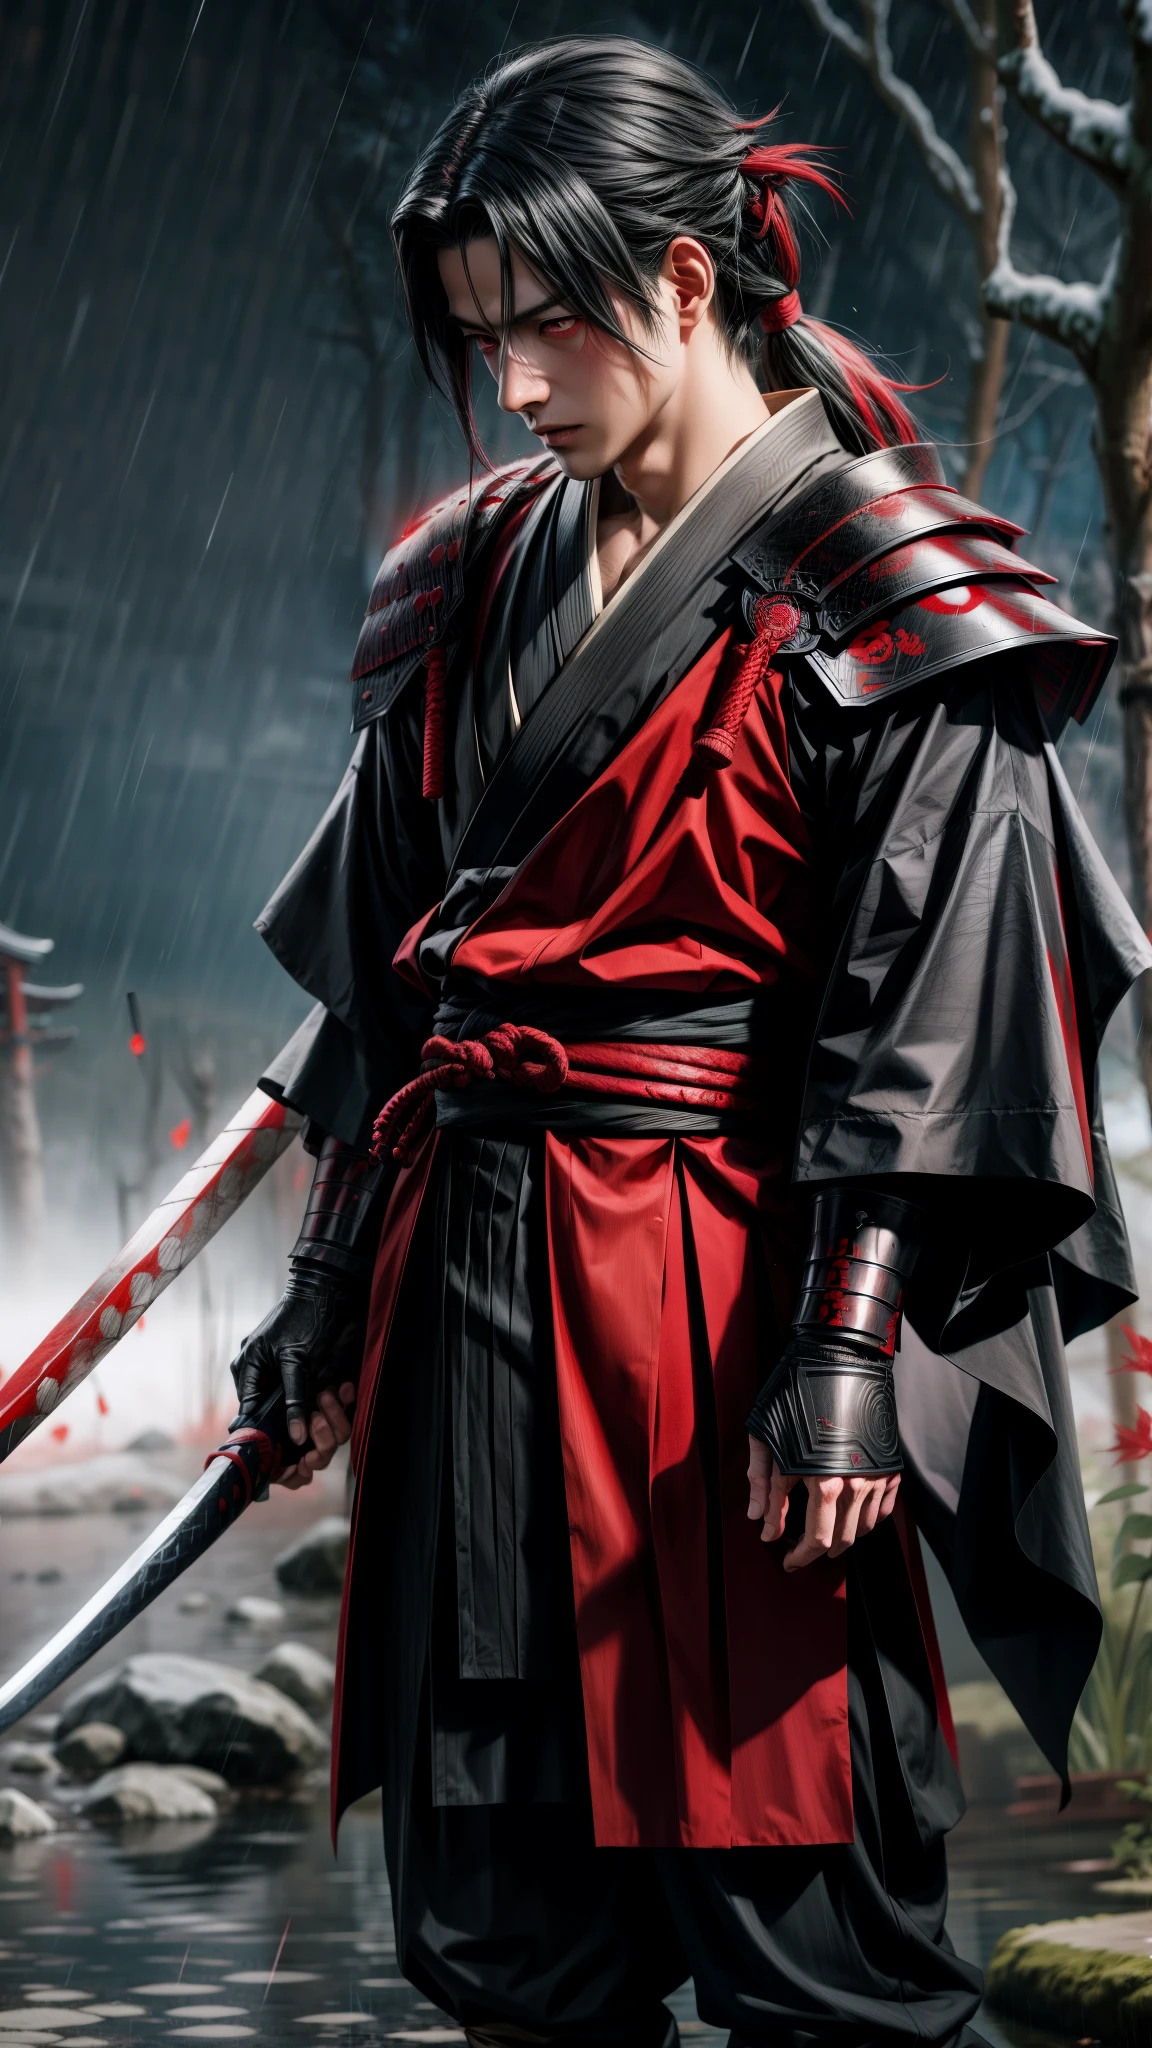 Uchiha Madara yeux rouges avec armure complète de zirah et samouraï à la main debout sous la pluie, inspiré du Kanō Sanraku, inspiré de Kanō Hōgai, samouraï, homme vagabond, Itachi Uchiha, itatchi uchiha, inspiré de Tōshūsai Sharaku, Akatsuki Akira, samouraï urbain, de Kenshin, Madara Uchiha extrêmement réaliste